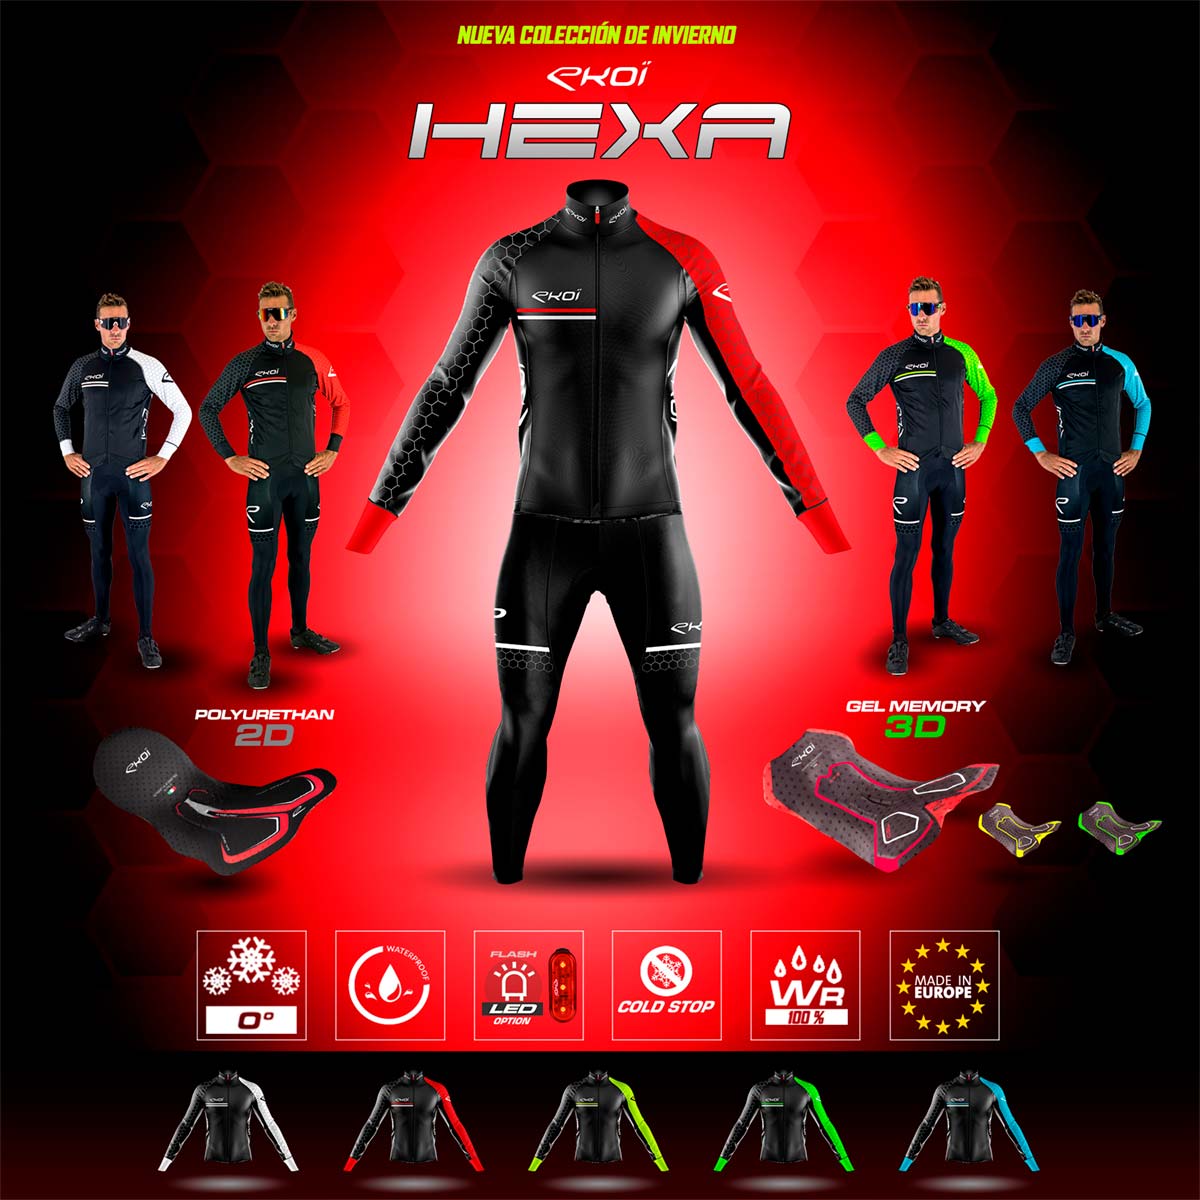 Ekoï presenta su equipación de invierno Hexa, con tratamiento hidrorrepelente WR y muchas opciones a elegir